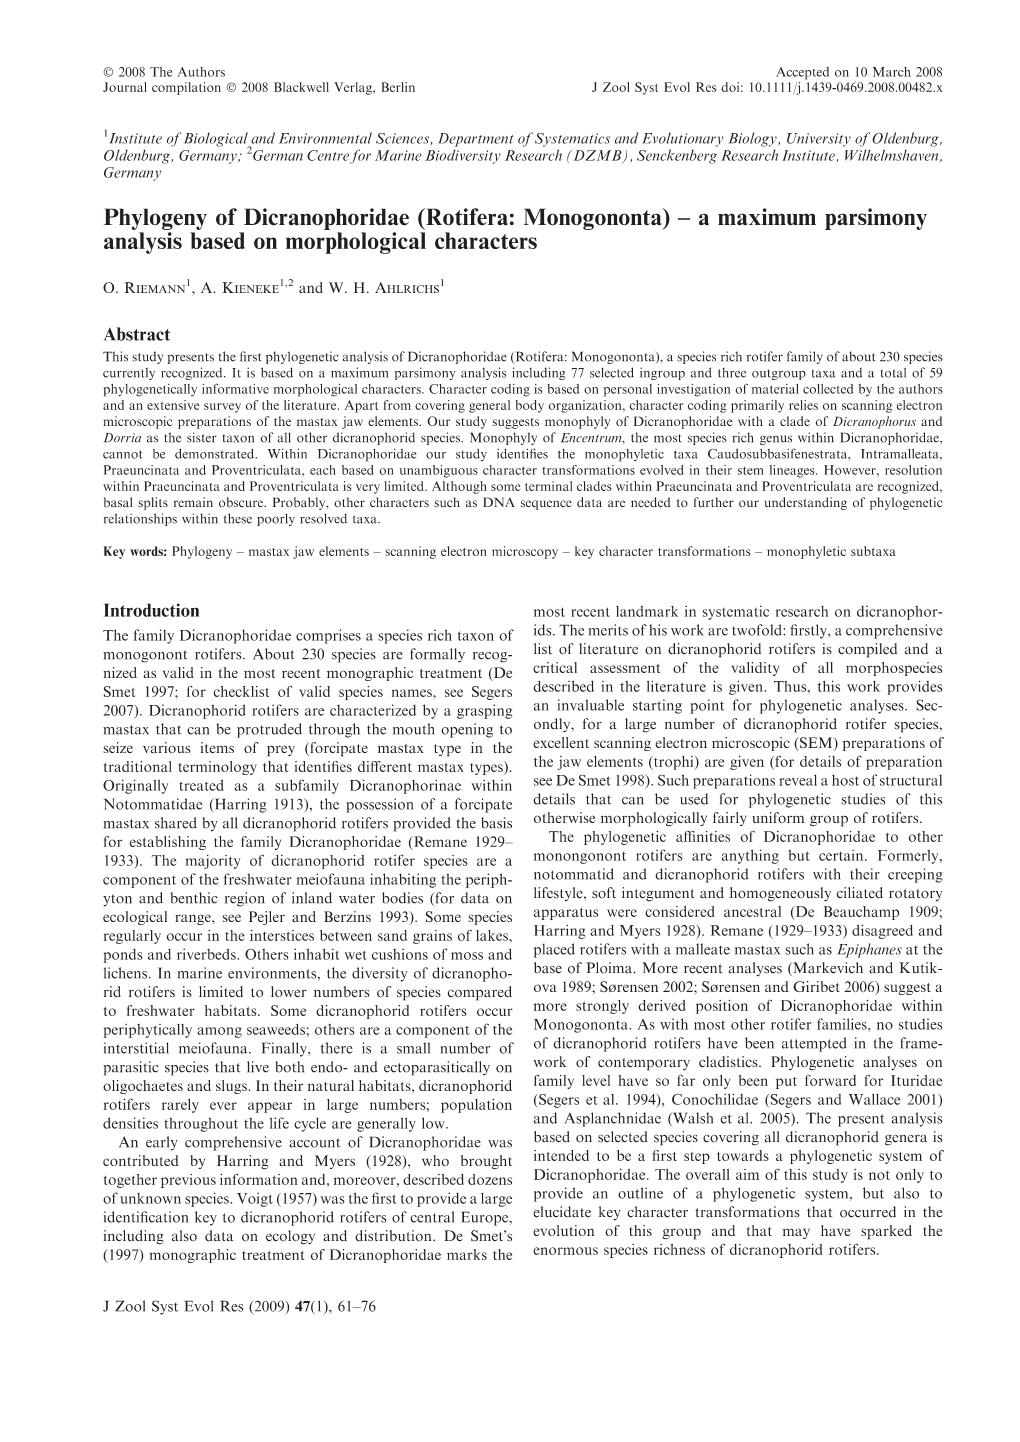 Phylogeny of Dicranophoridae (Rotifera: Monogononta) – a Maximum Parsimony Analysis Based on Morphological Characters